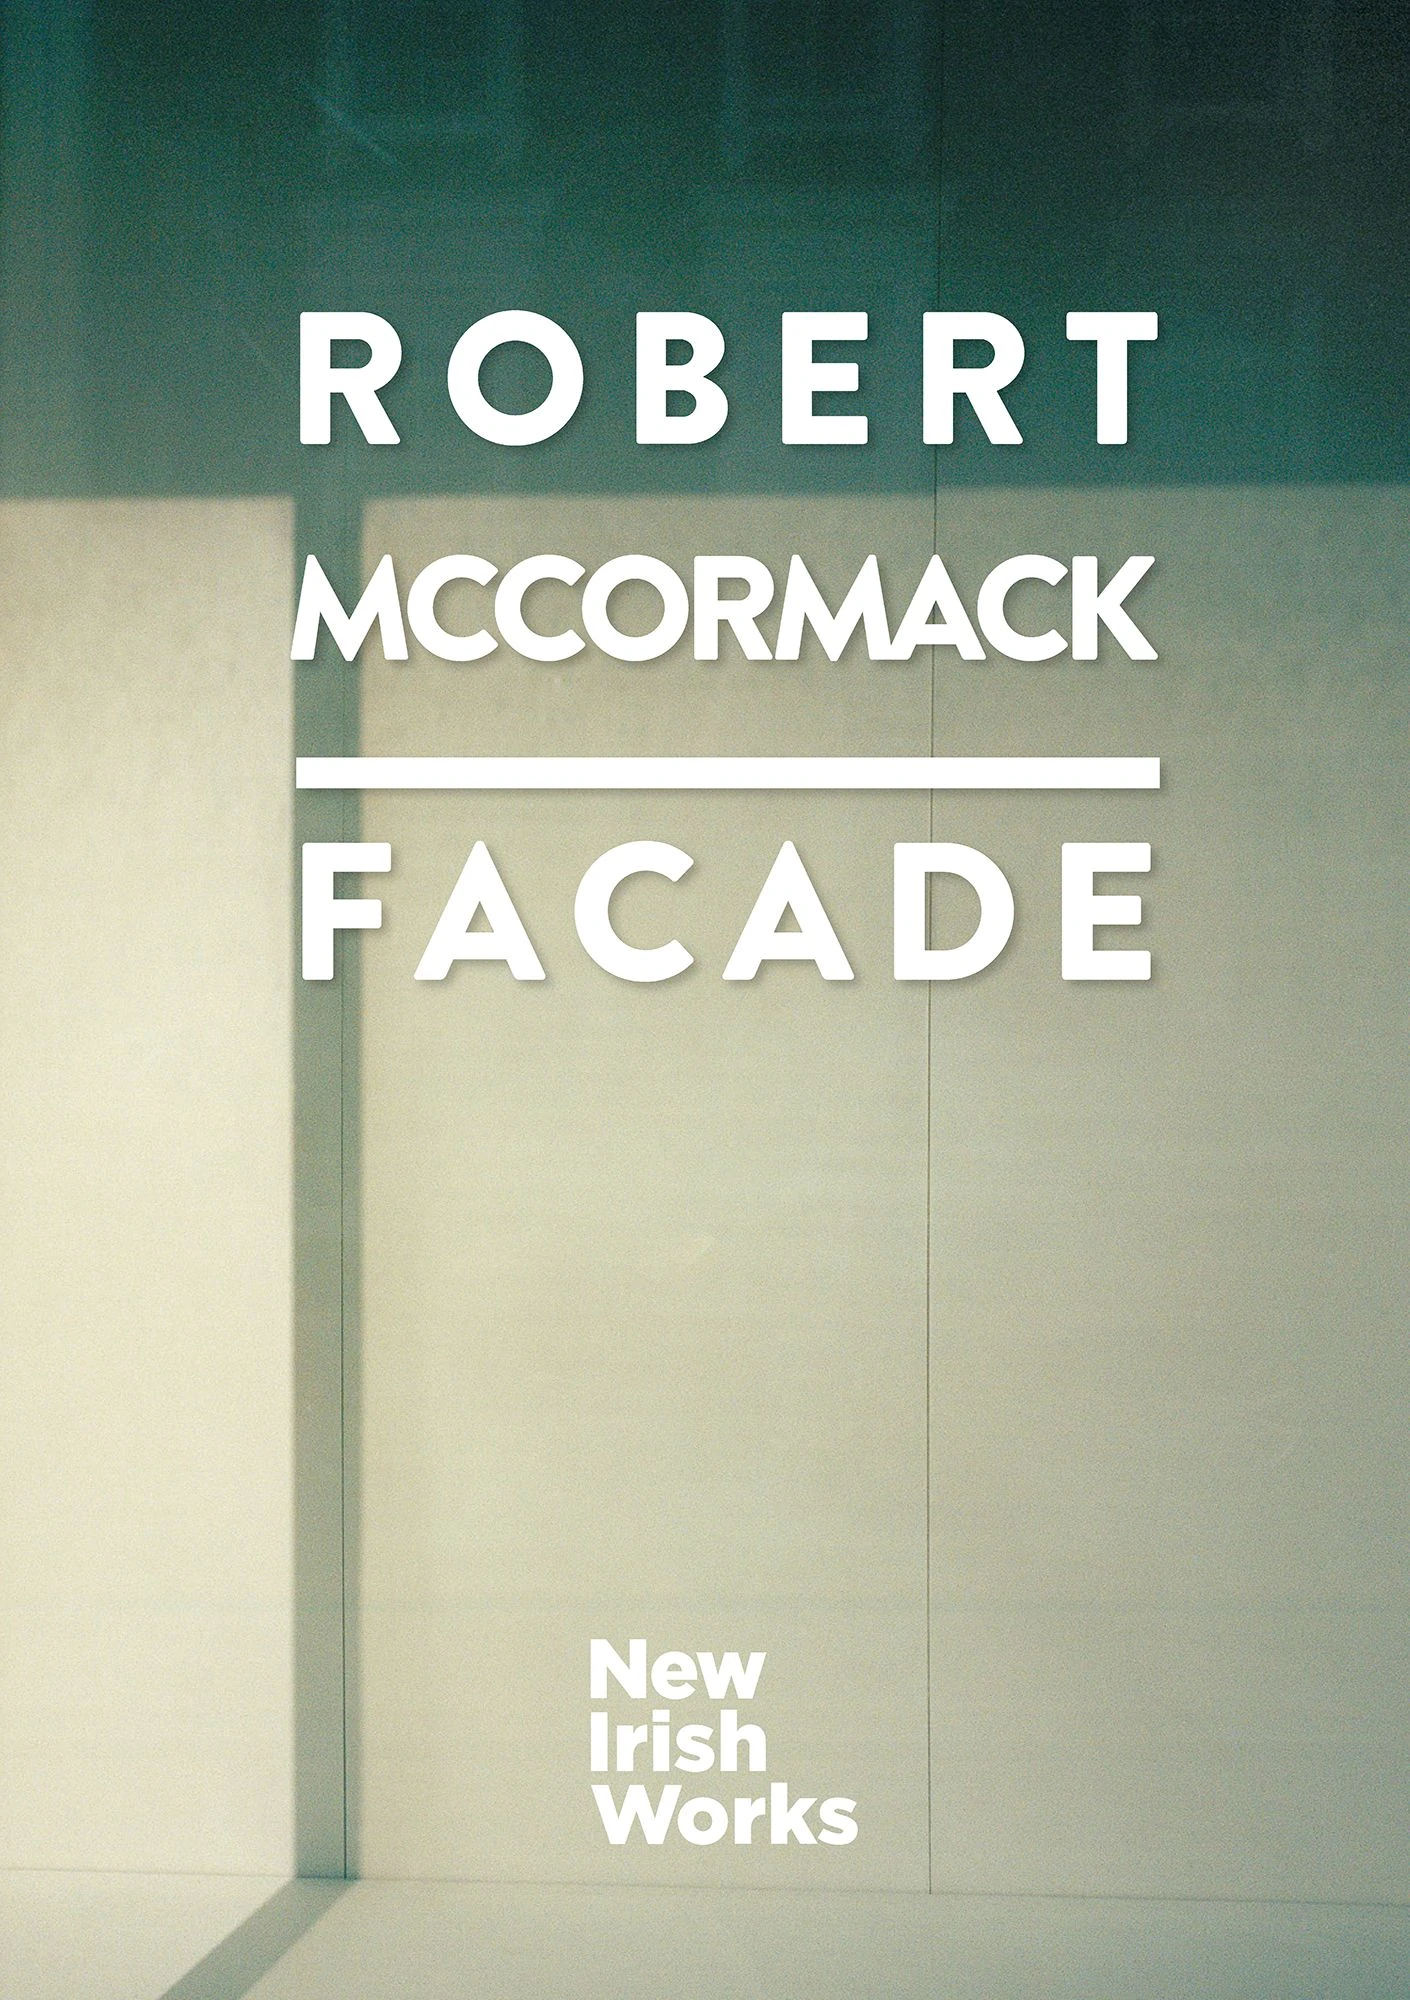 Facade, Robert McCormack